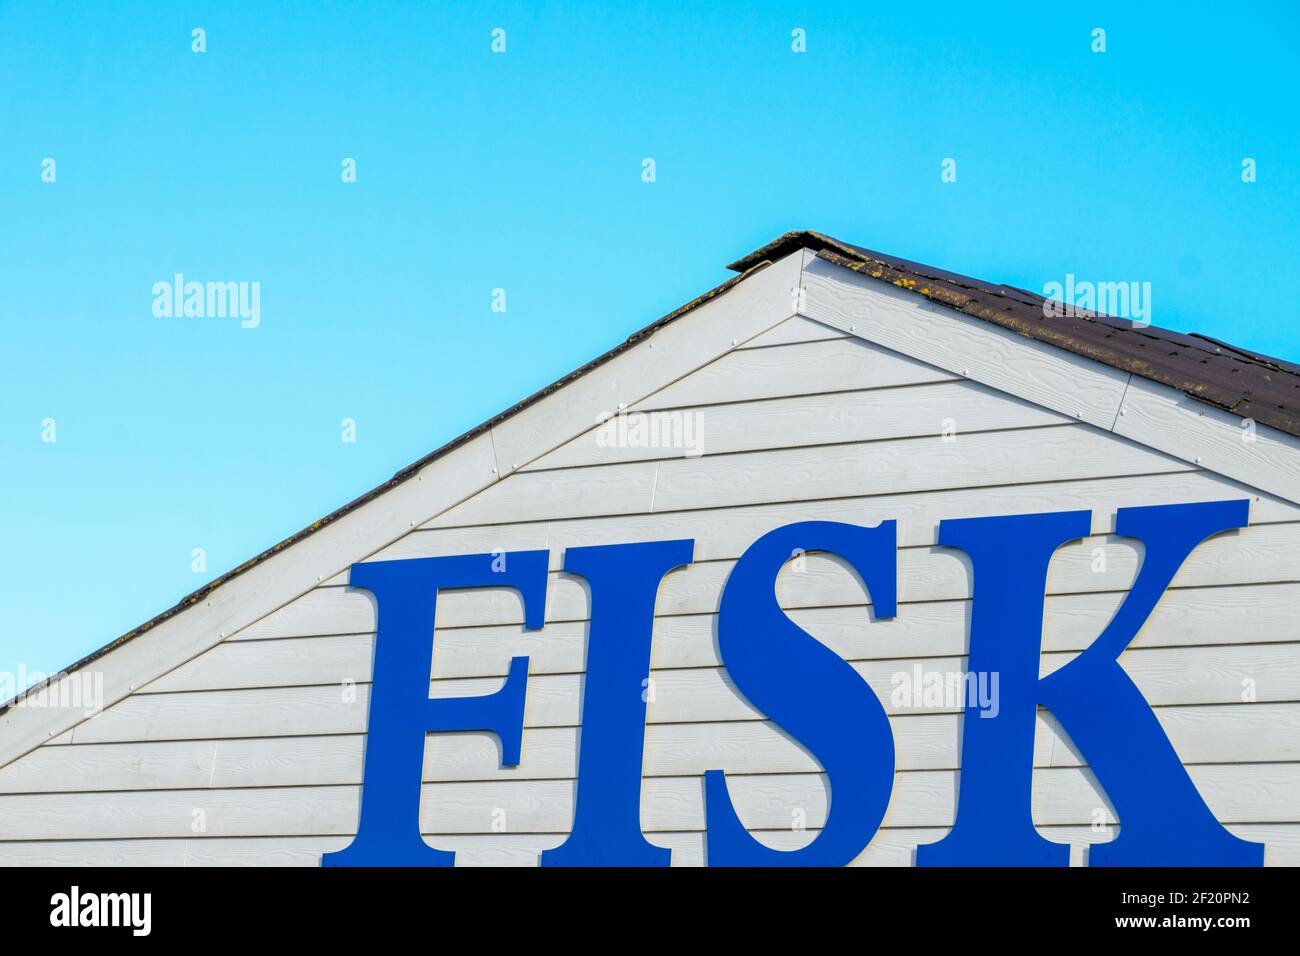 Fischer sales house in Denmark Stock Photo